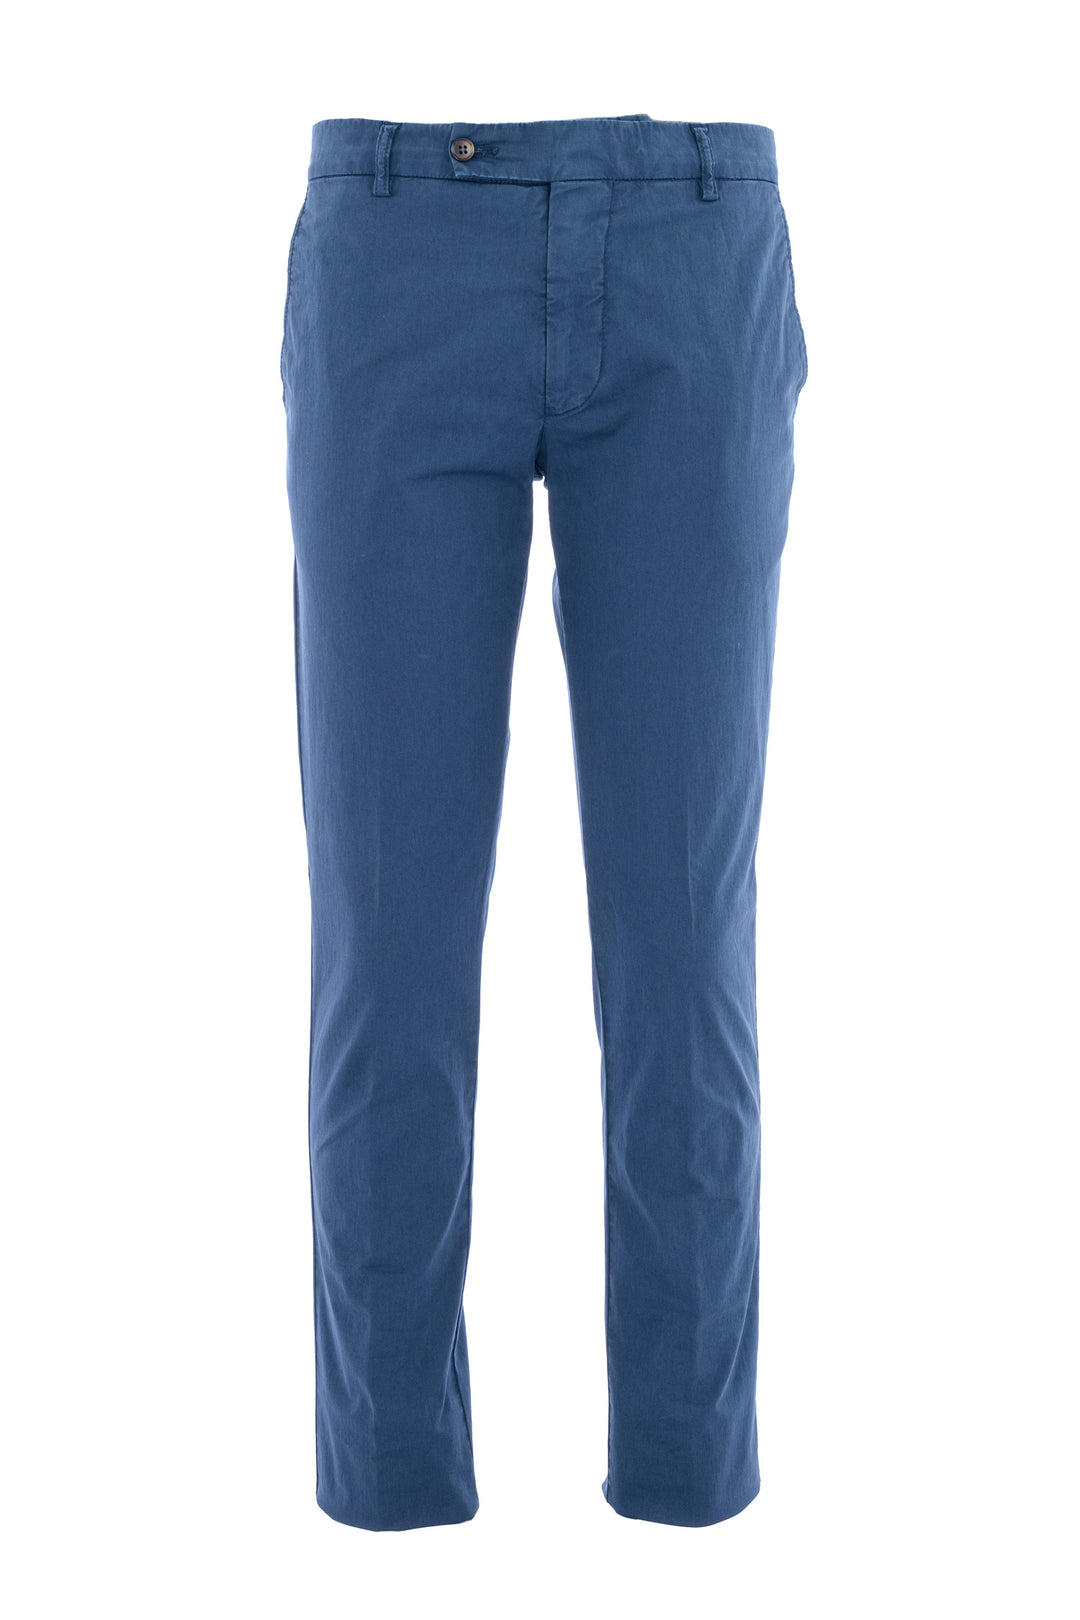 BERWICH Pantalone slim in gabardina di cotone stretch blu - Mancinelli 1954